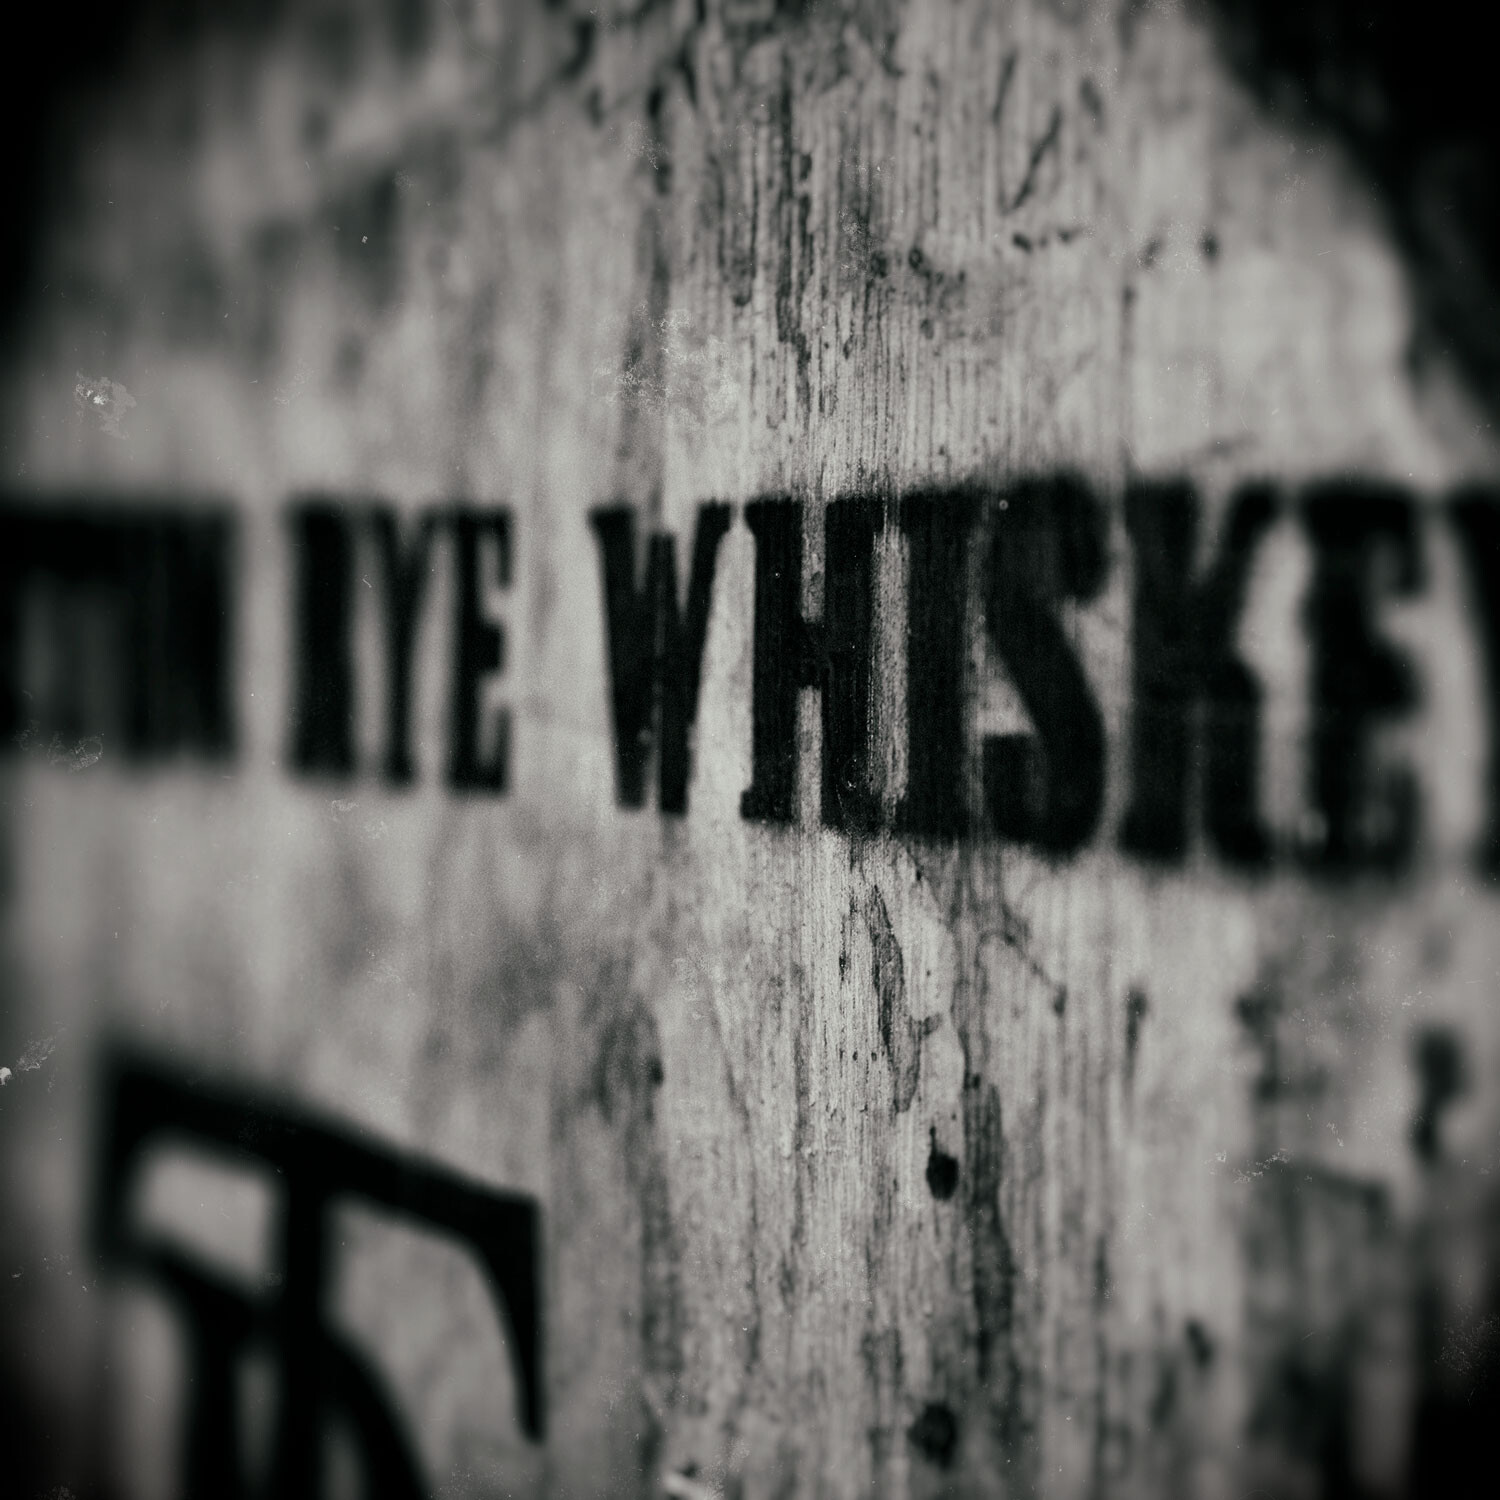 Rye Whiskey barrel